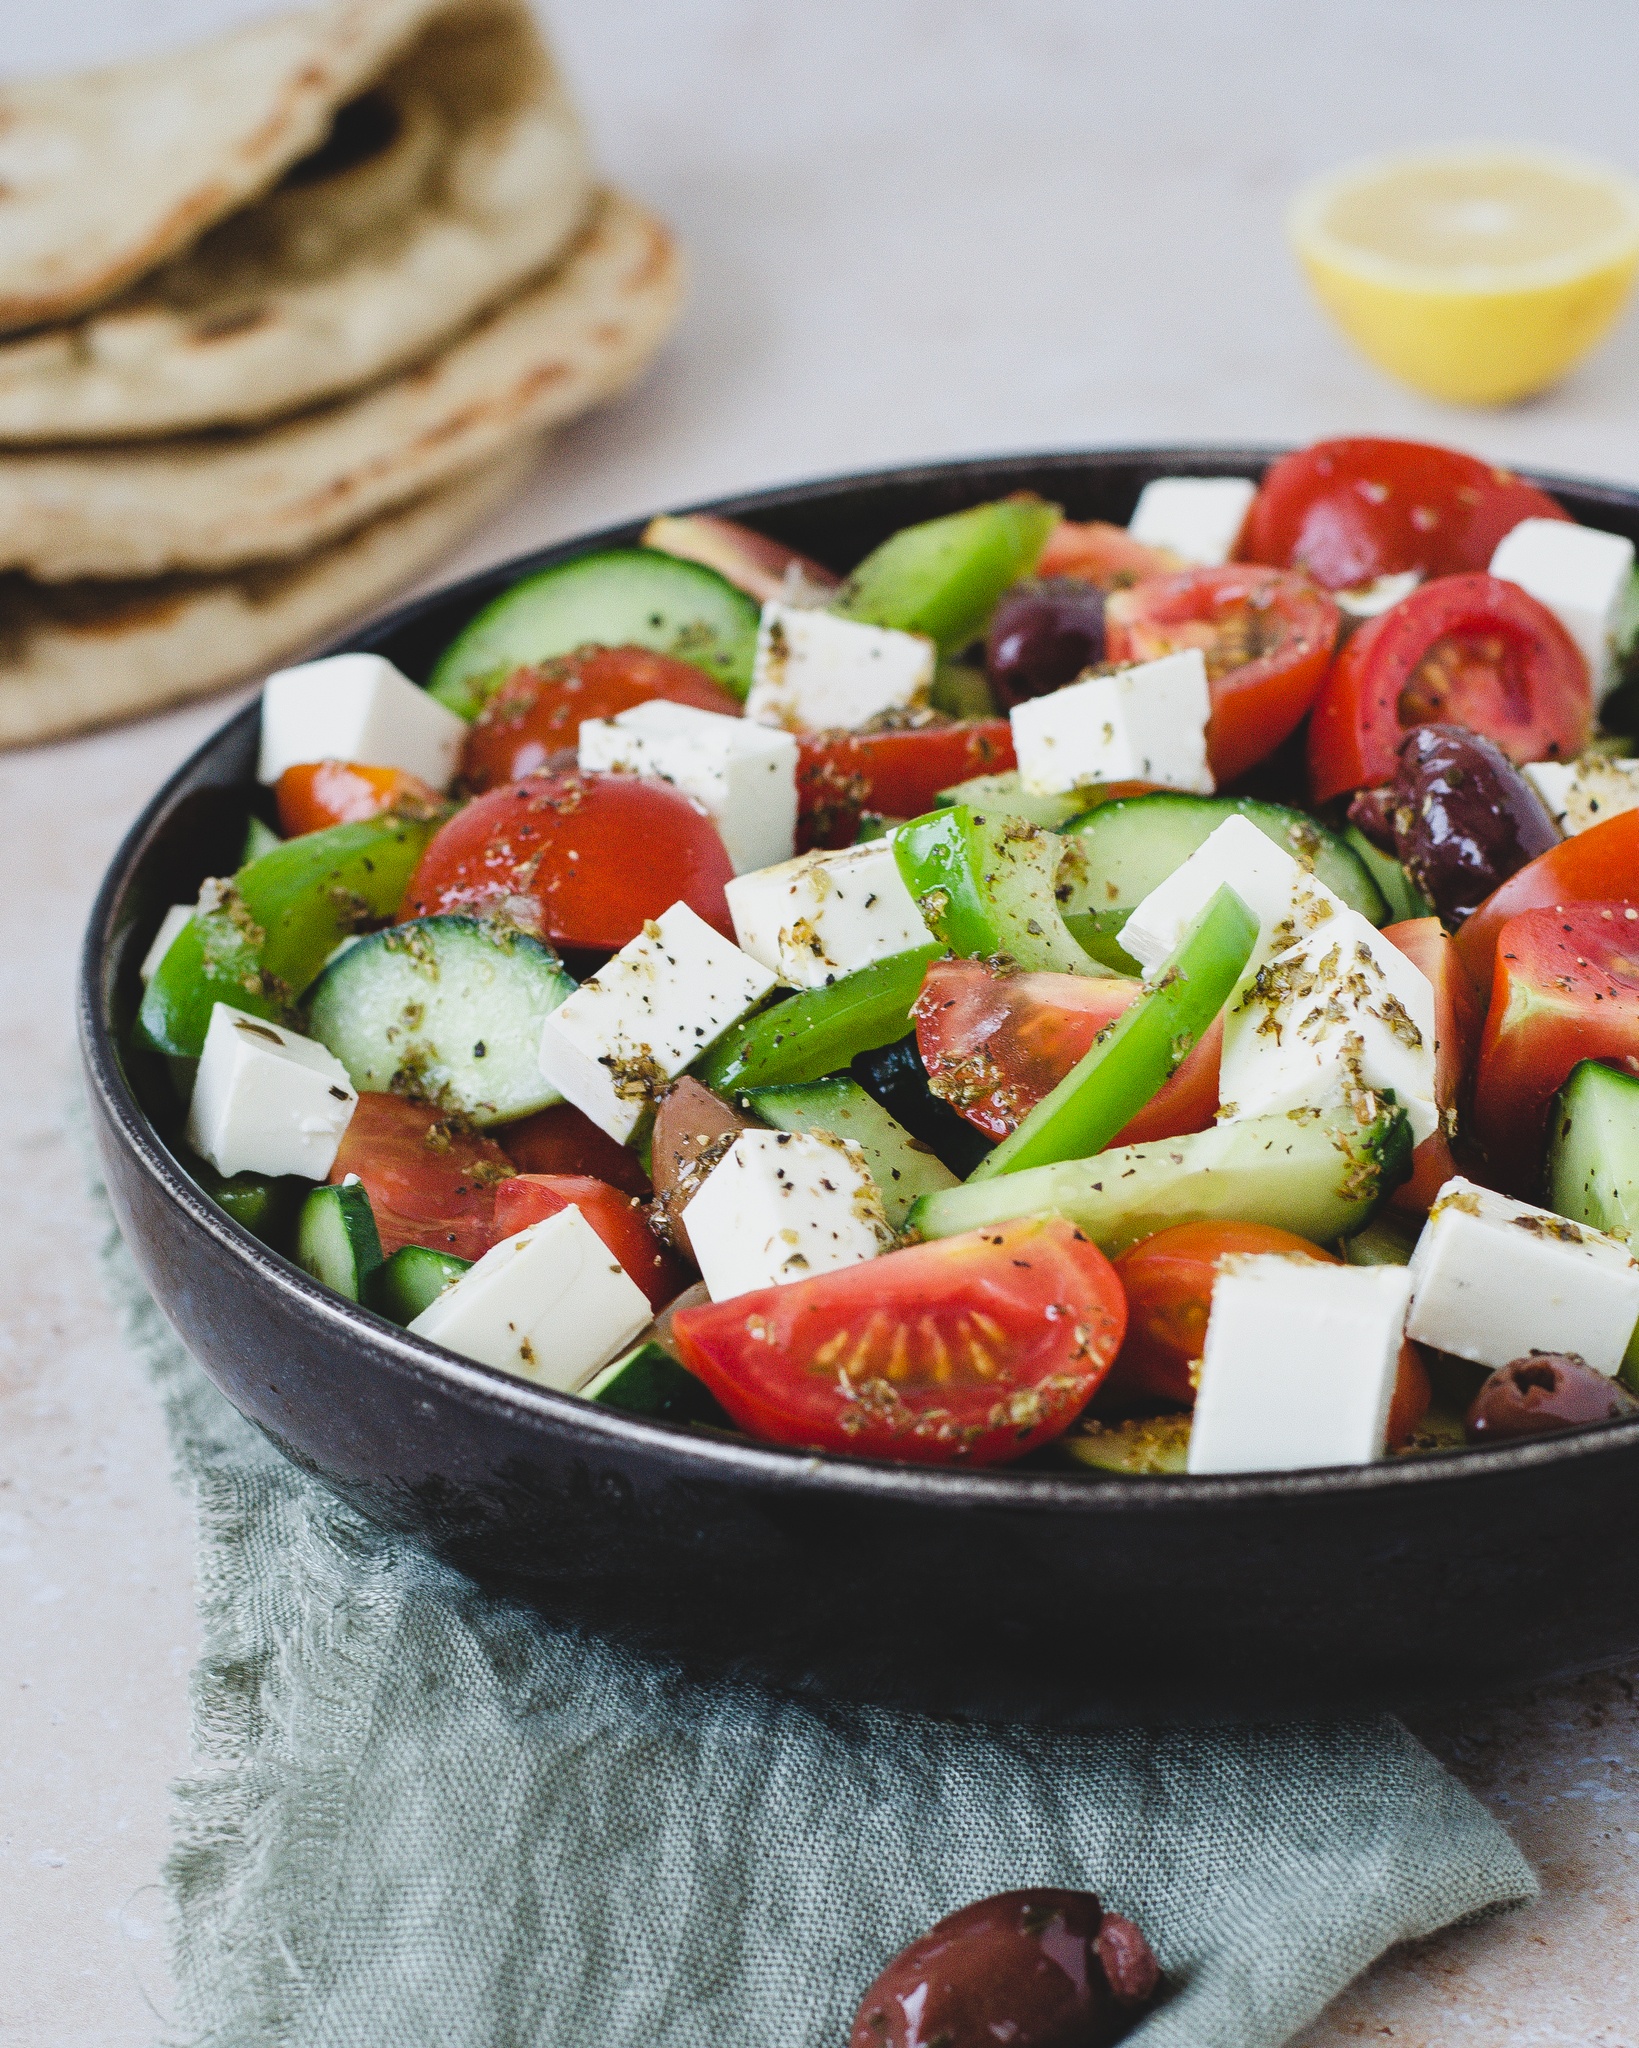 græsk salat med oliven